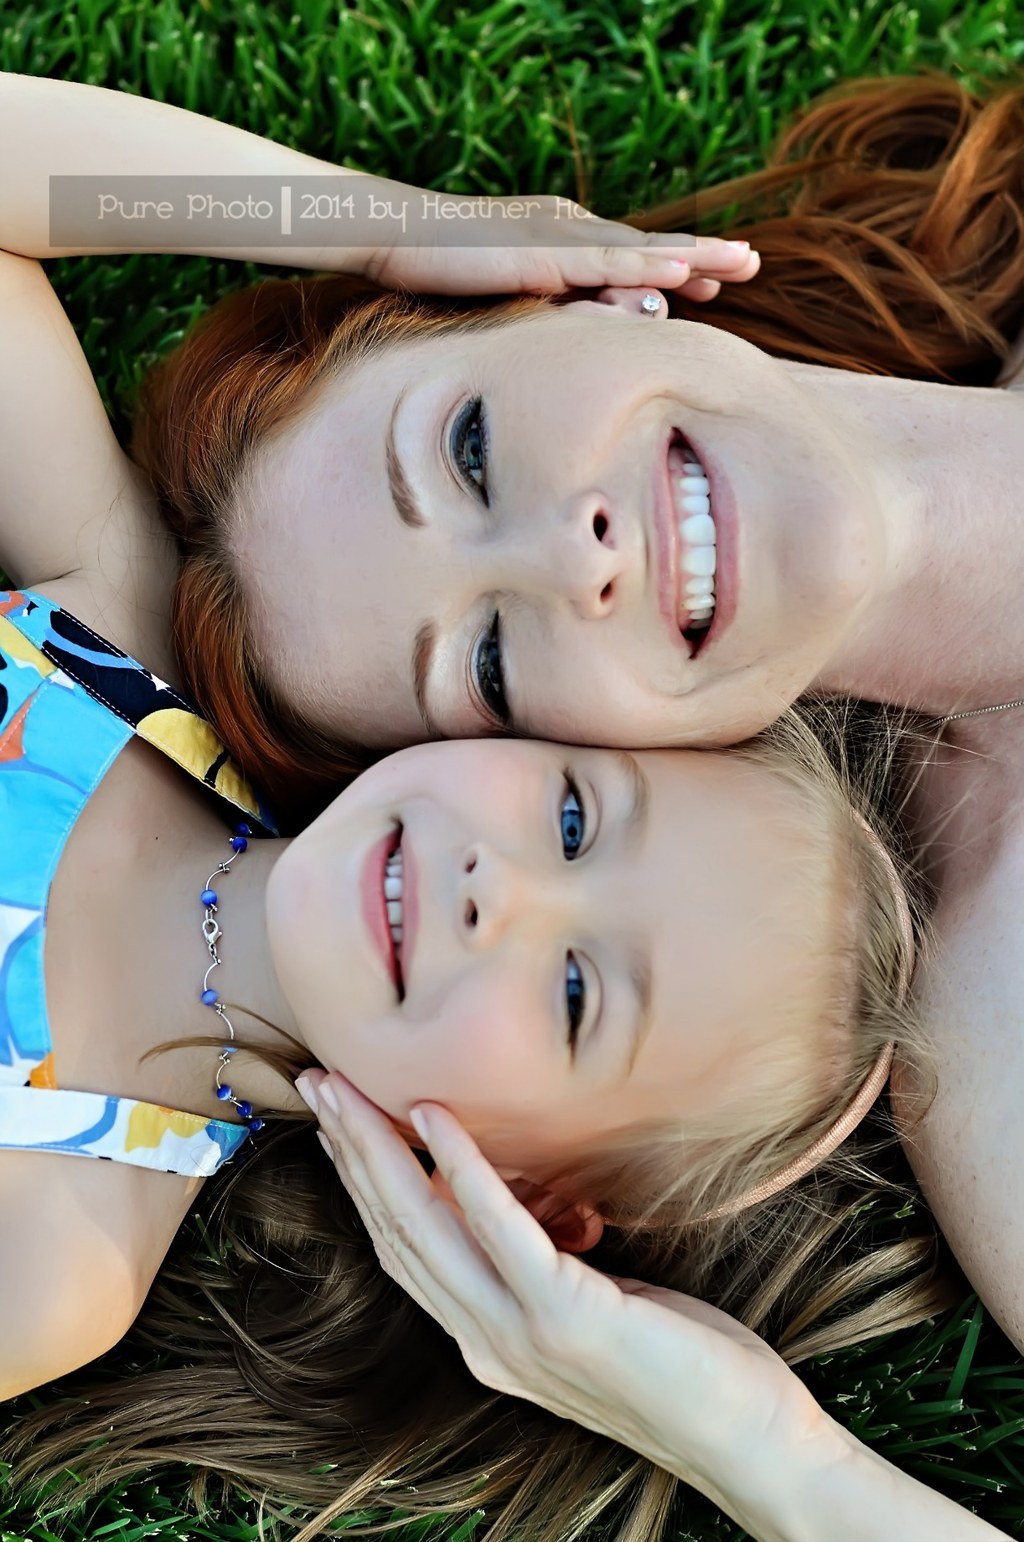 Mother-Daughter Photoshoot Ideas: 9 Tips for Heartwarming Photos